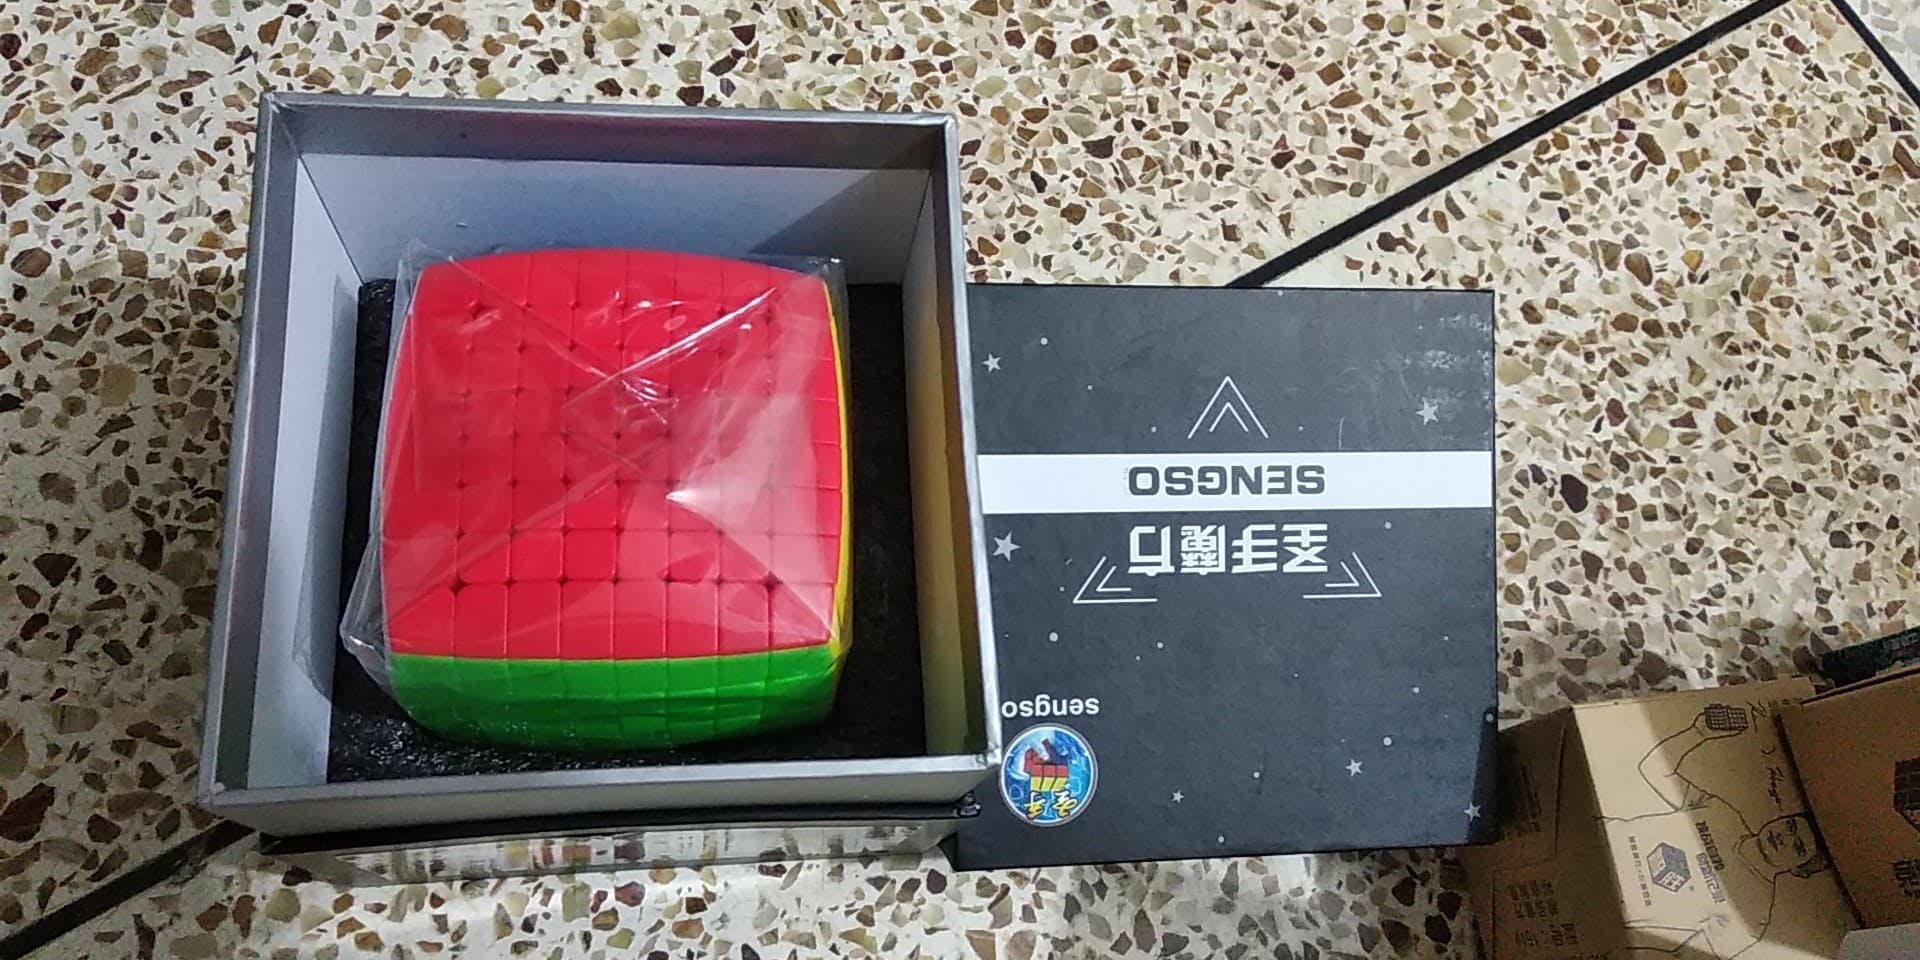 Shengshou 8x8 Cube